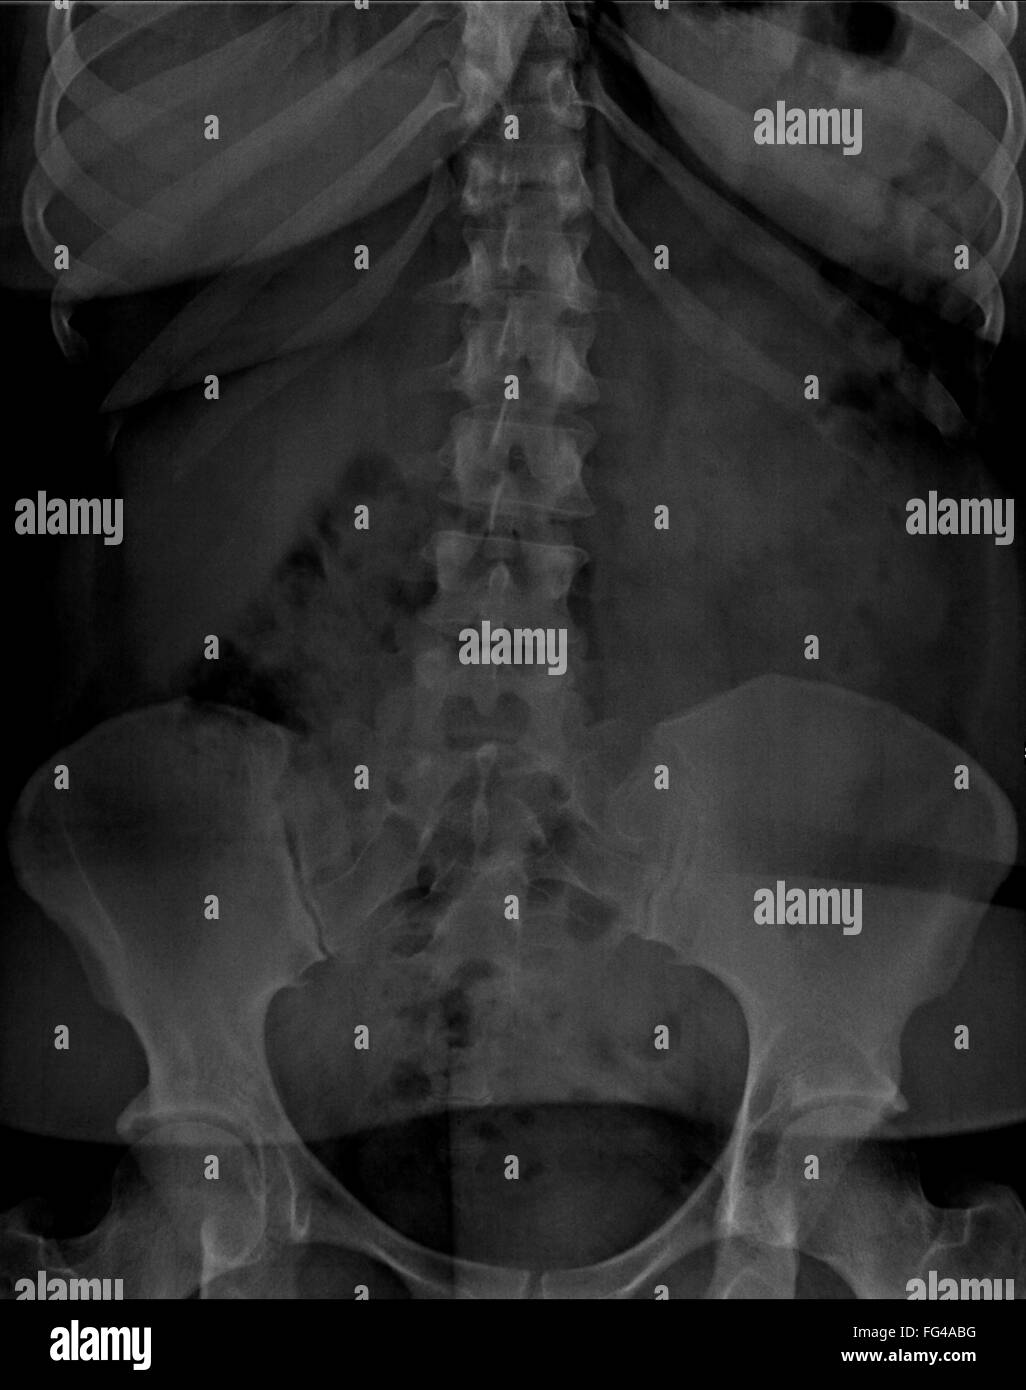 Rx abdomen con piercing Foto de stock